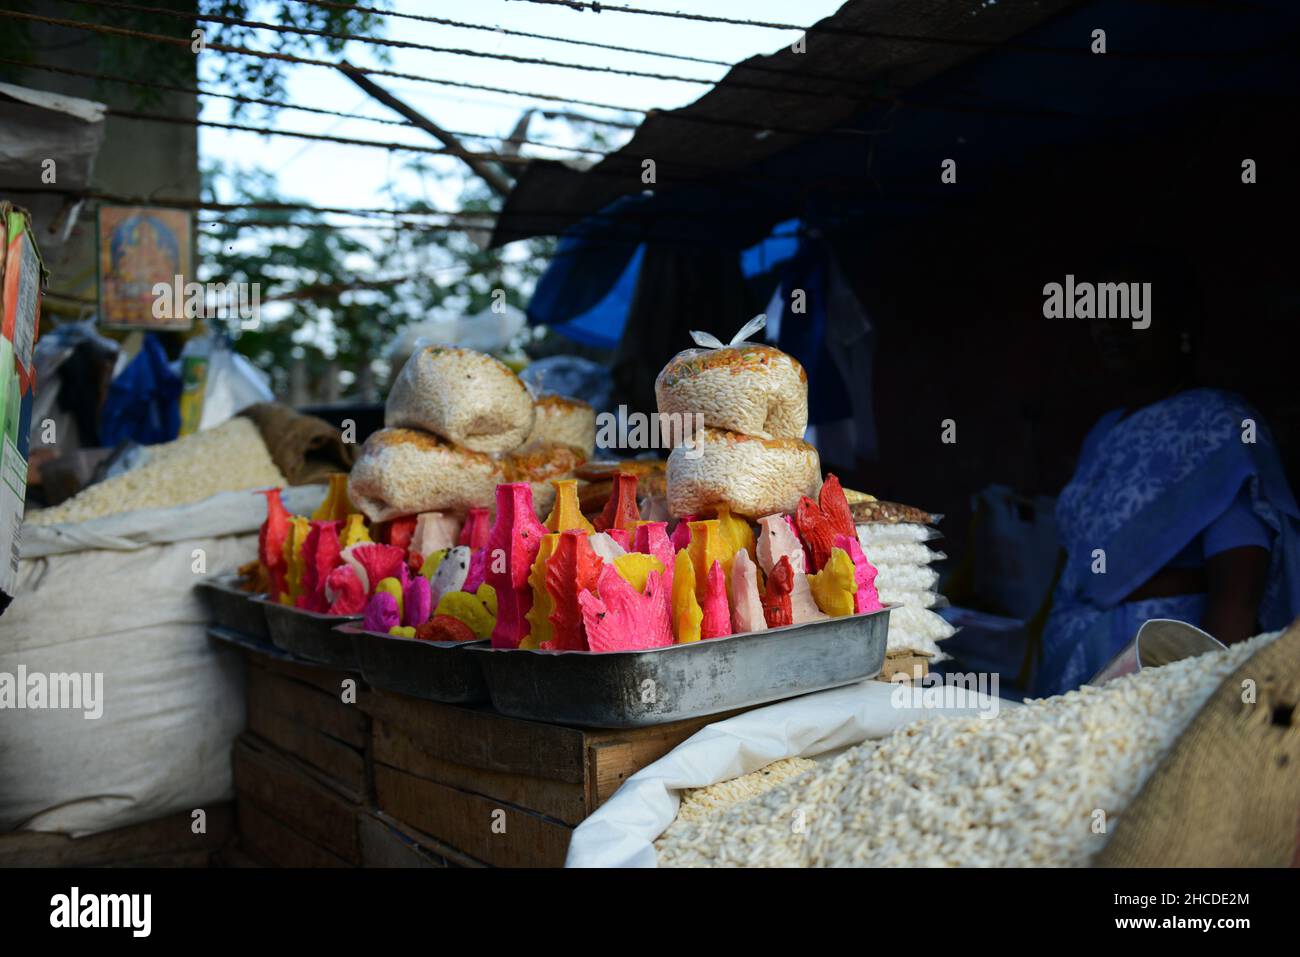 Batthasu Billalu ist eine traditionelle Süßigkeit in Andhra Pradesh, Karnataka und Tamil Nadu. Es besteht aus Zucker und Lebensmittelfarben. Stockfoto